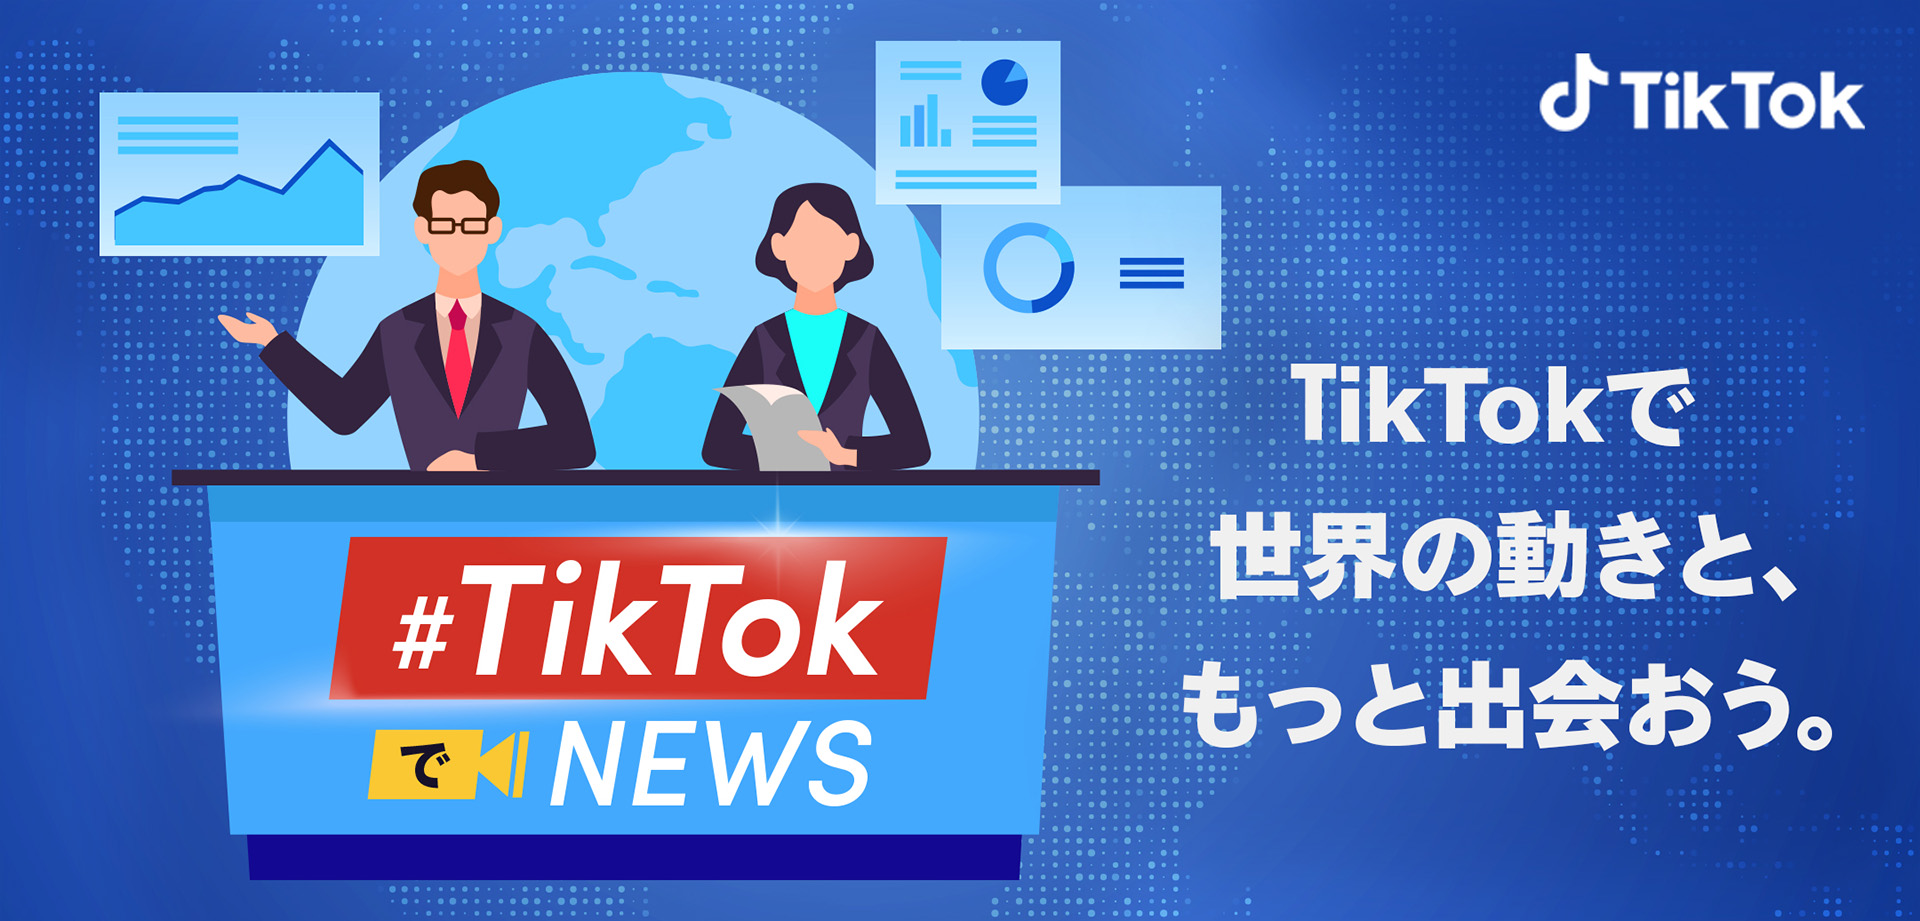 国内外のメディアと連携してニュースコンテンツを配信する Tiktokでニュース 週間総再生回数が1億回に急伸 参画メディアも続々と増加中 Tiktok ニュースルーム